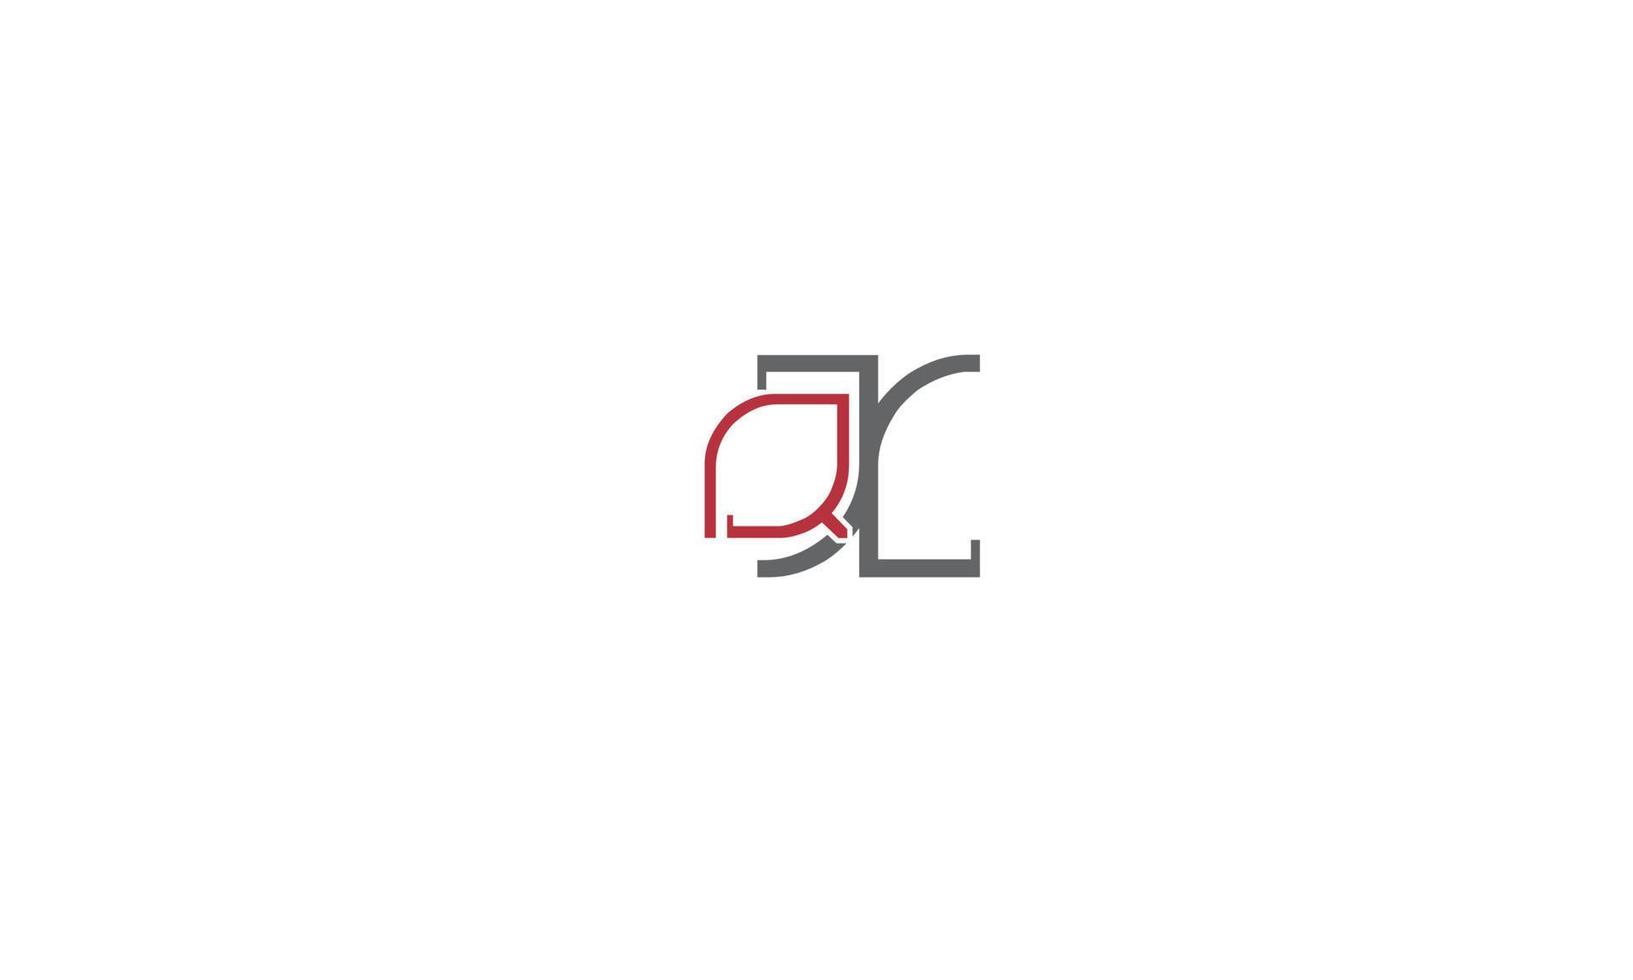 QX Alphabet letters Initials Monogram logo vector